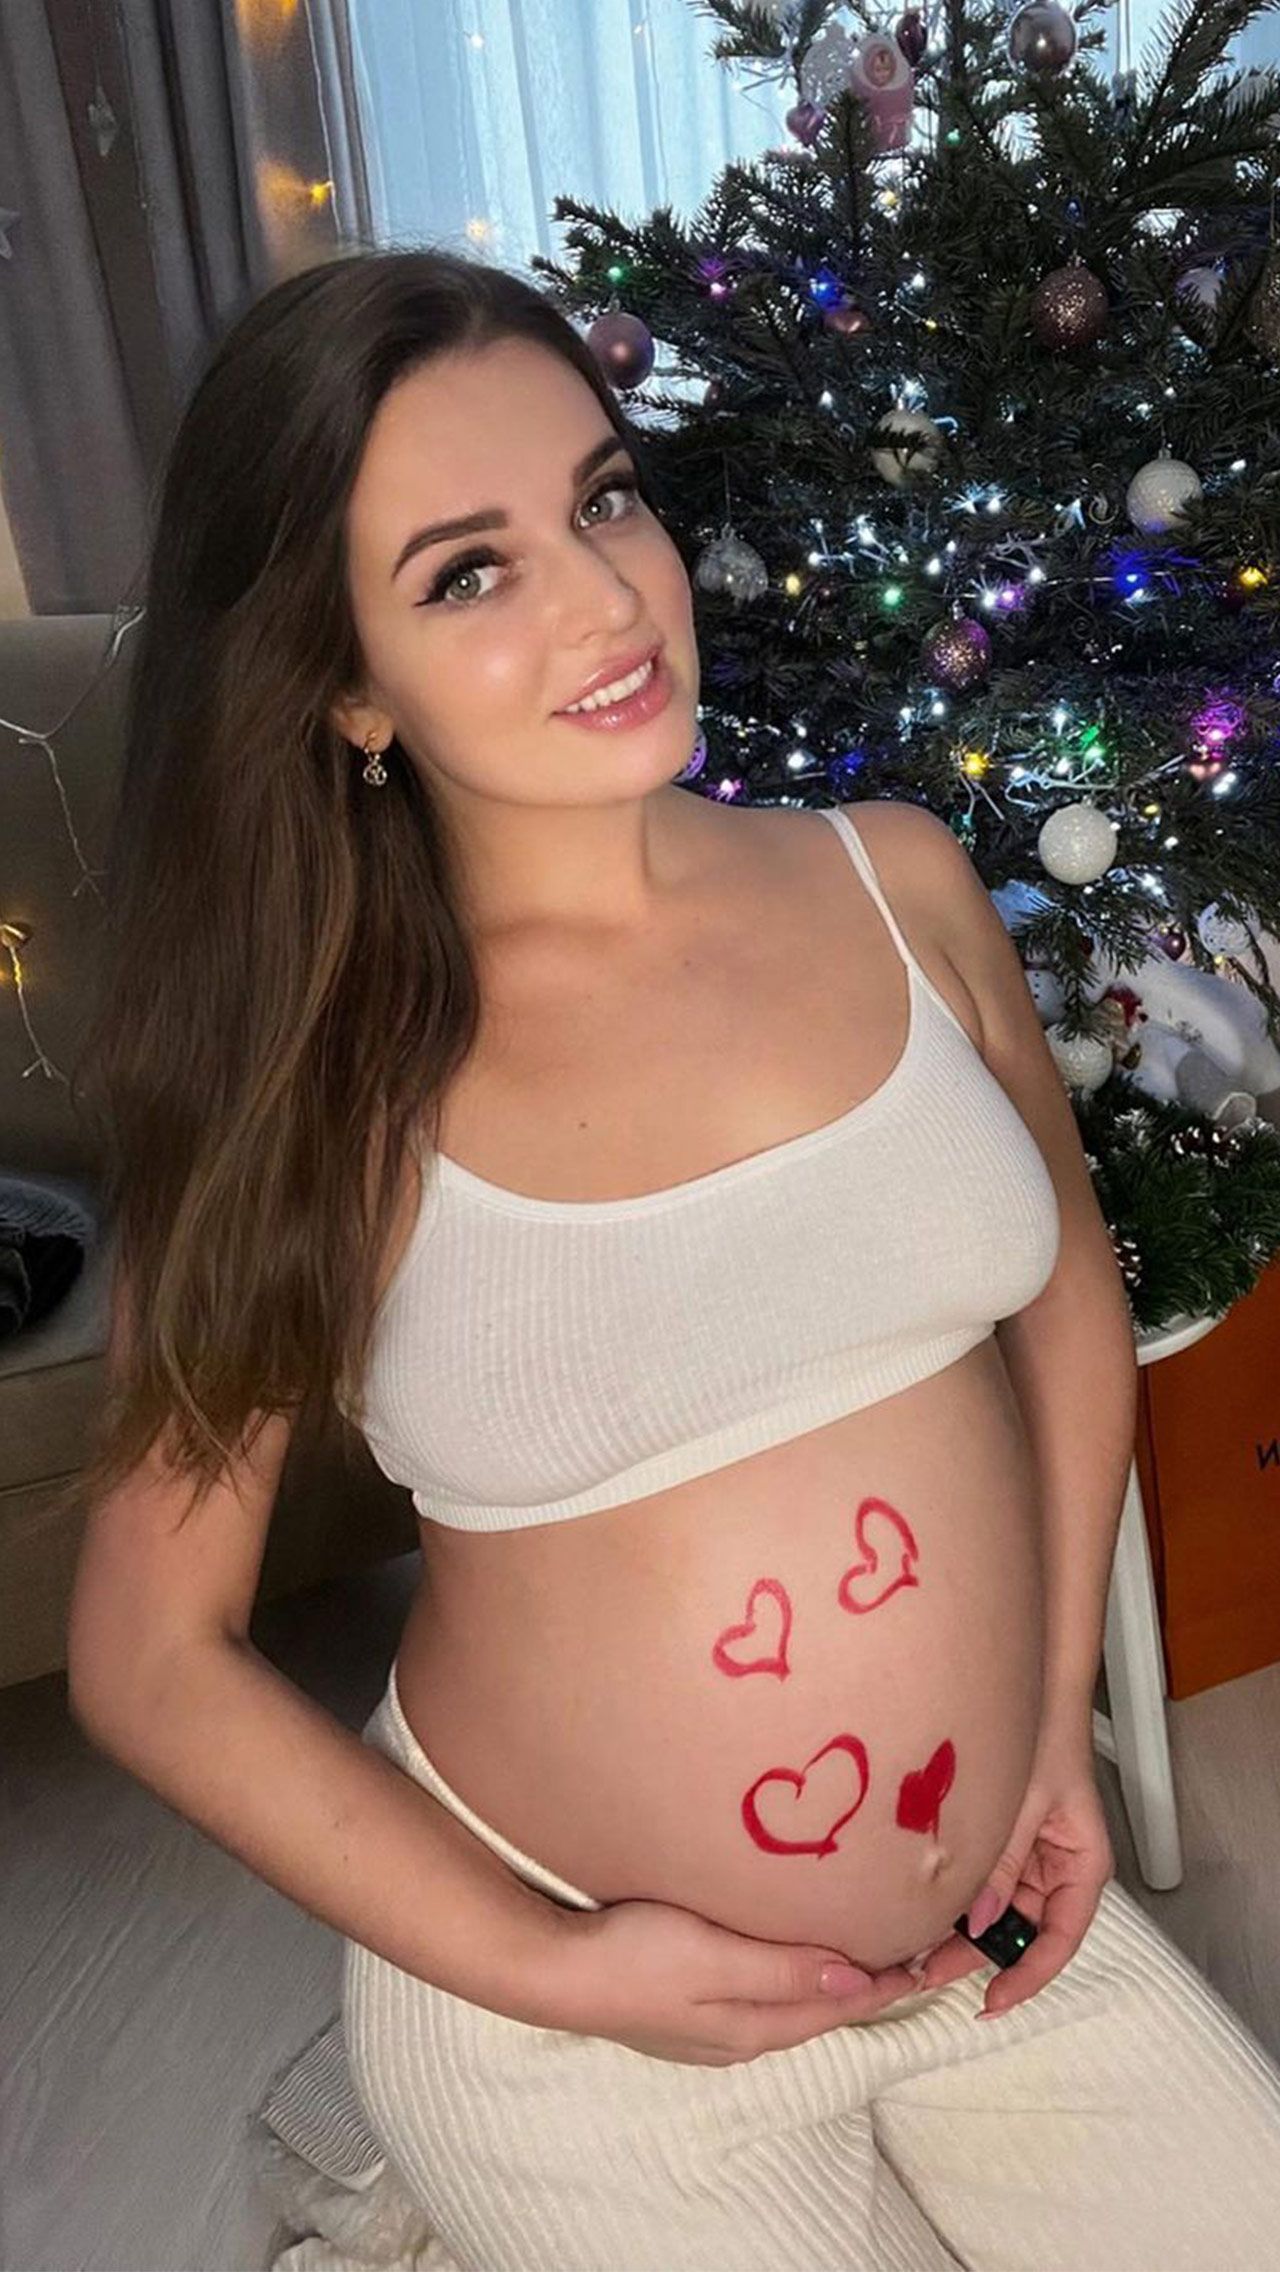 В октябре 2021 года Алеся объявила о своей беременности. «Настолько переполняли чувства, что я не могла умолчать об этом», — писала девушка в соцсетях.